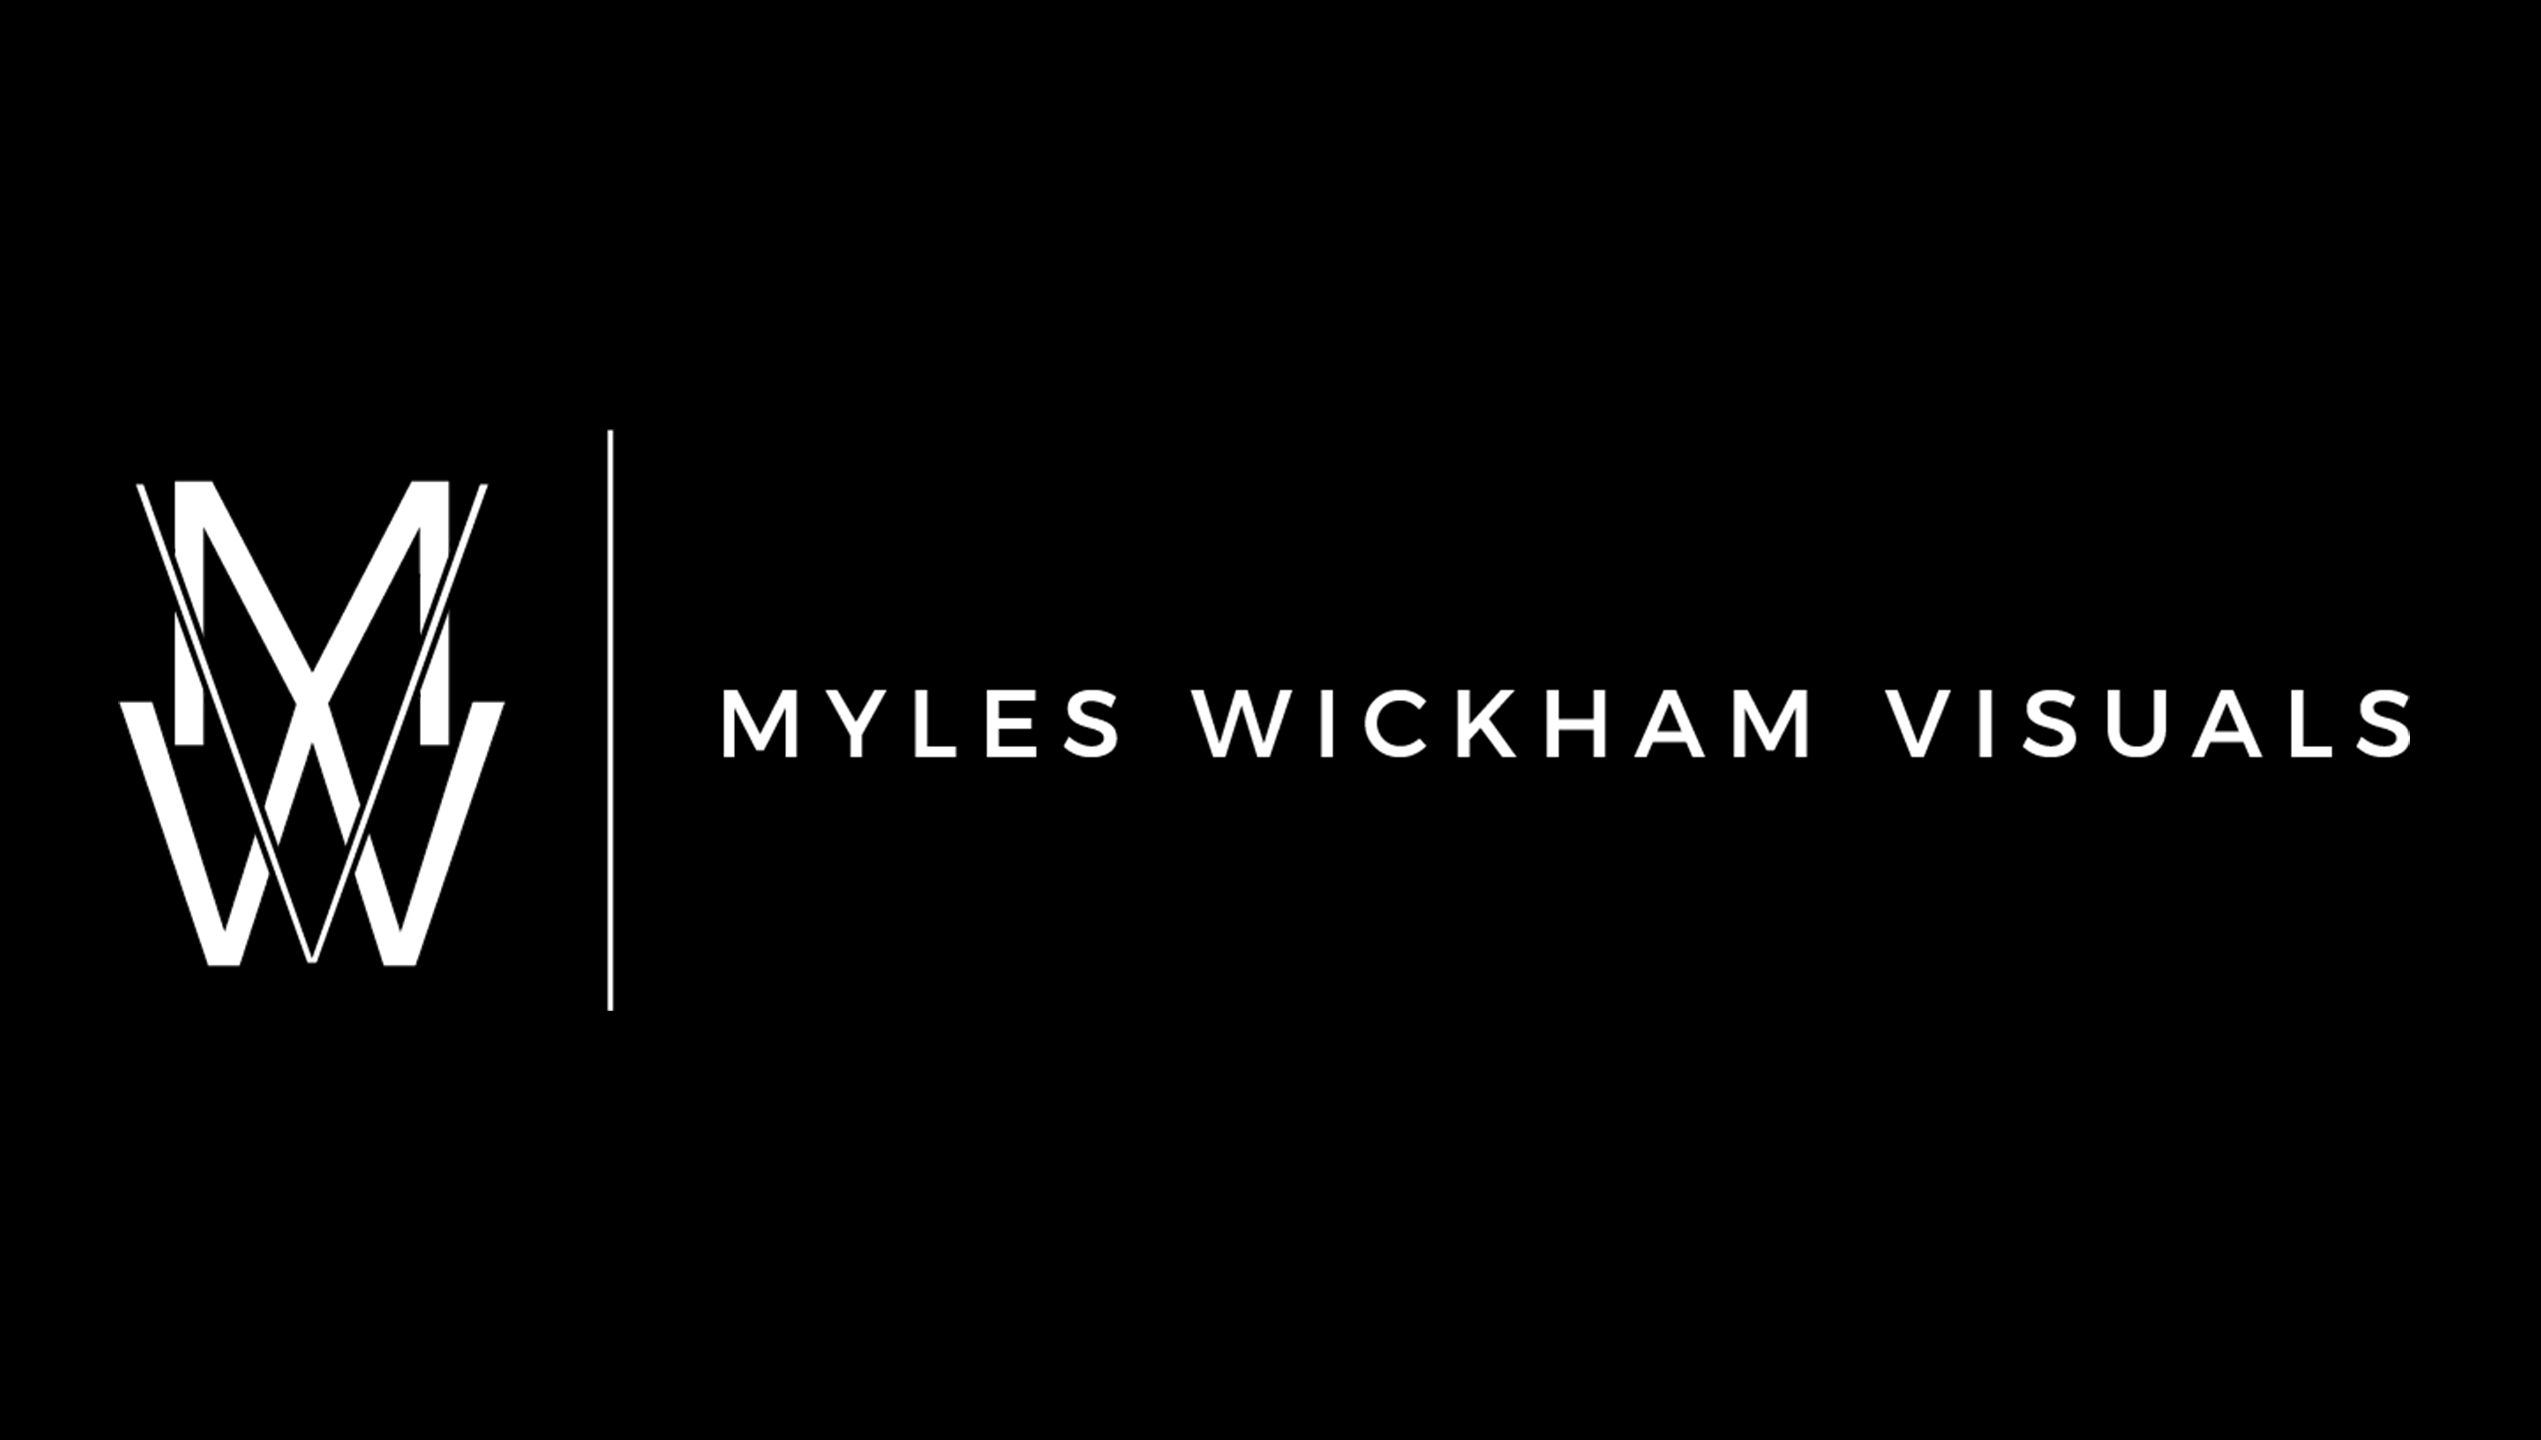 Myles Wickham